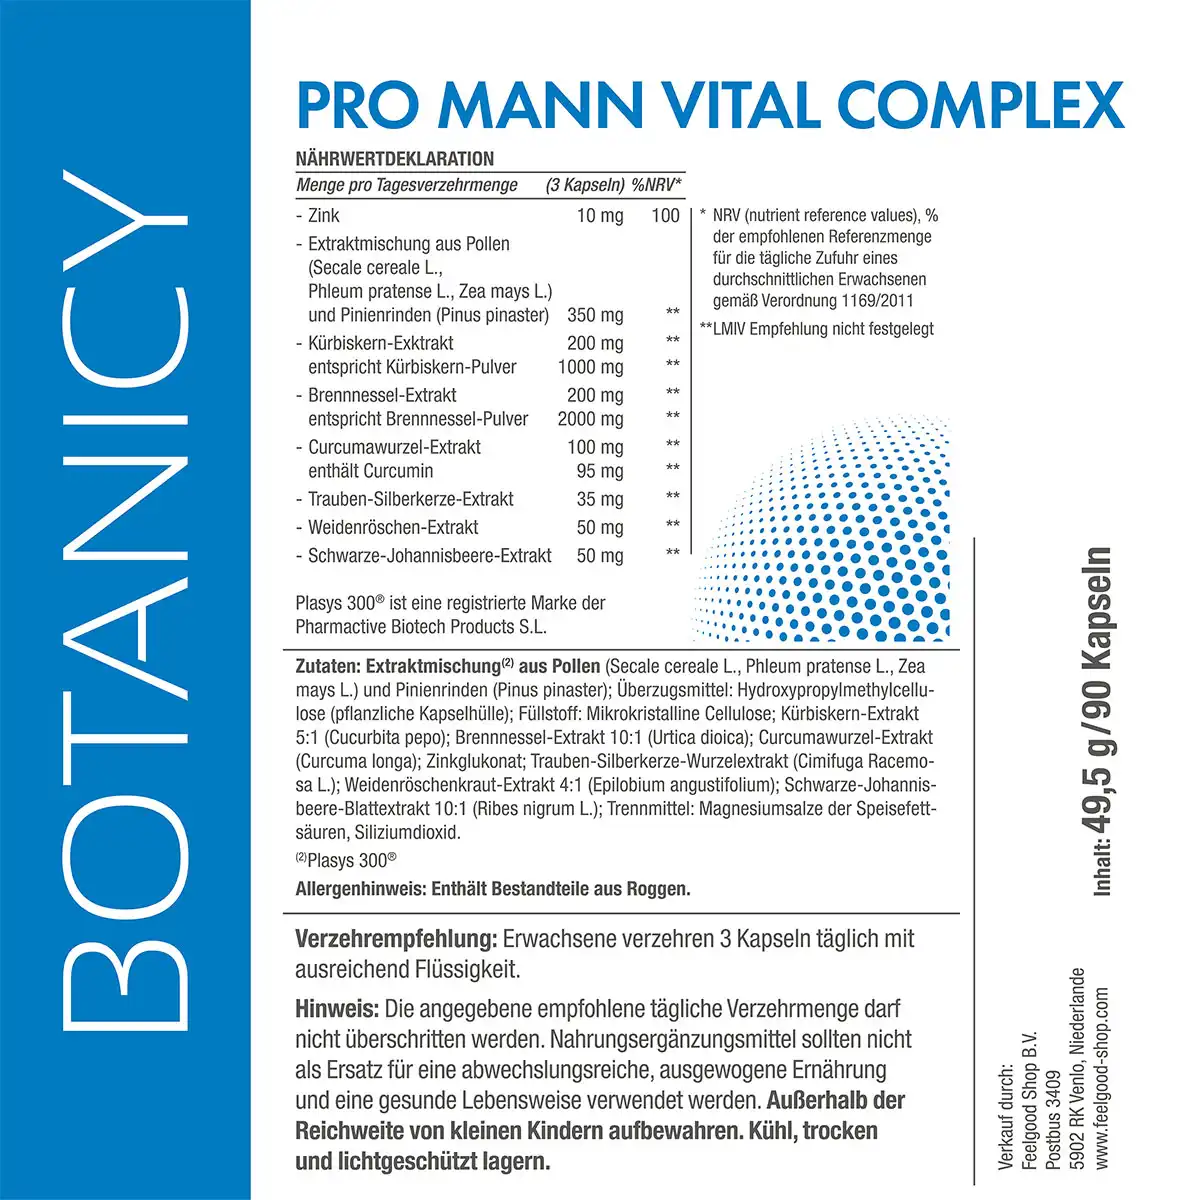 PRO MANN Vital Complex mit Plasys 300